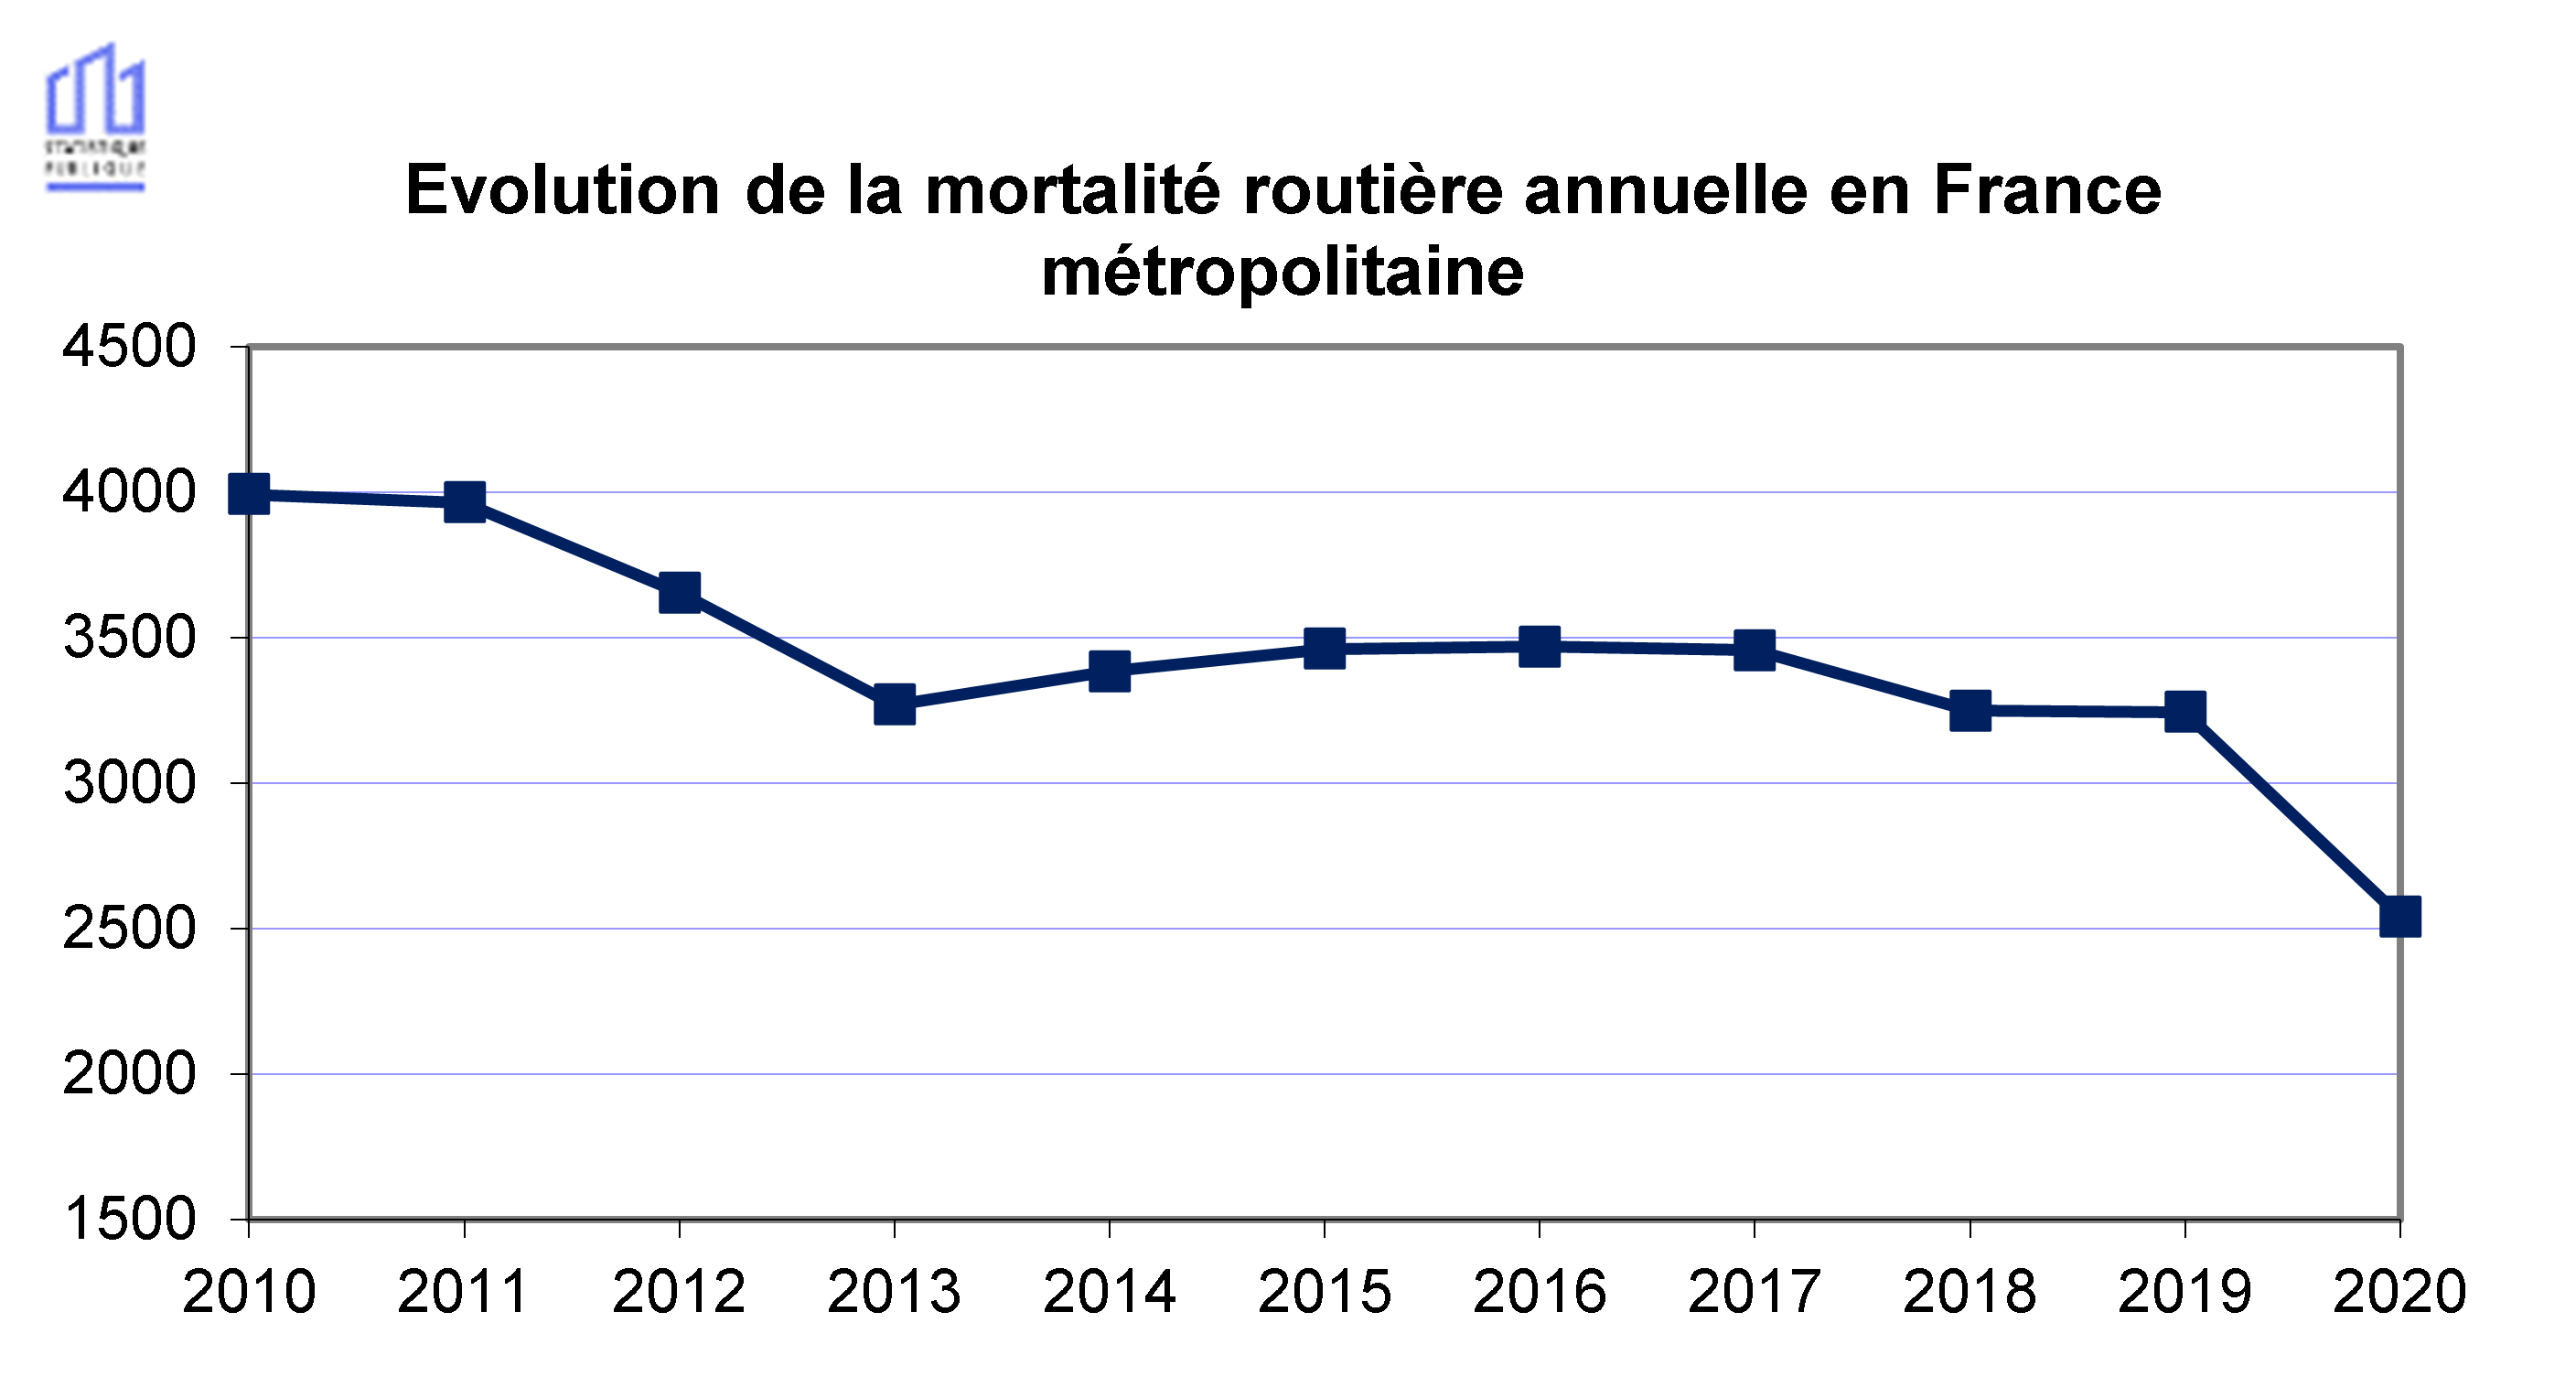 Tendance 2010-2020 mortalité routière